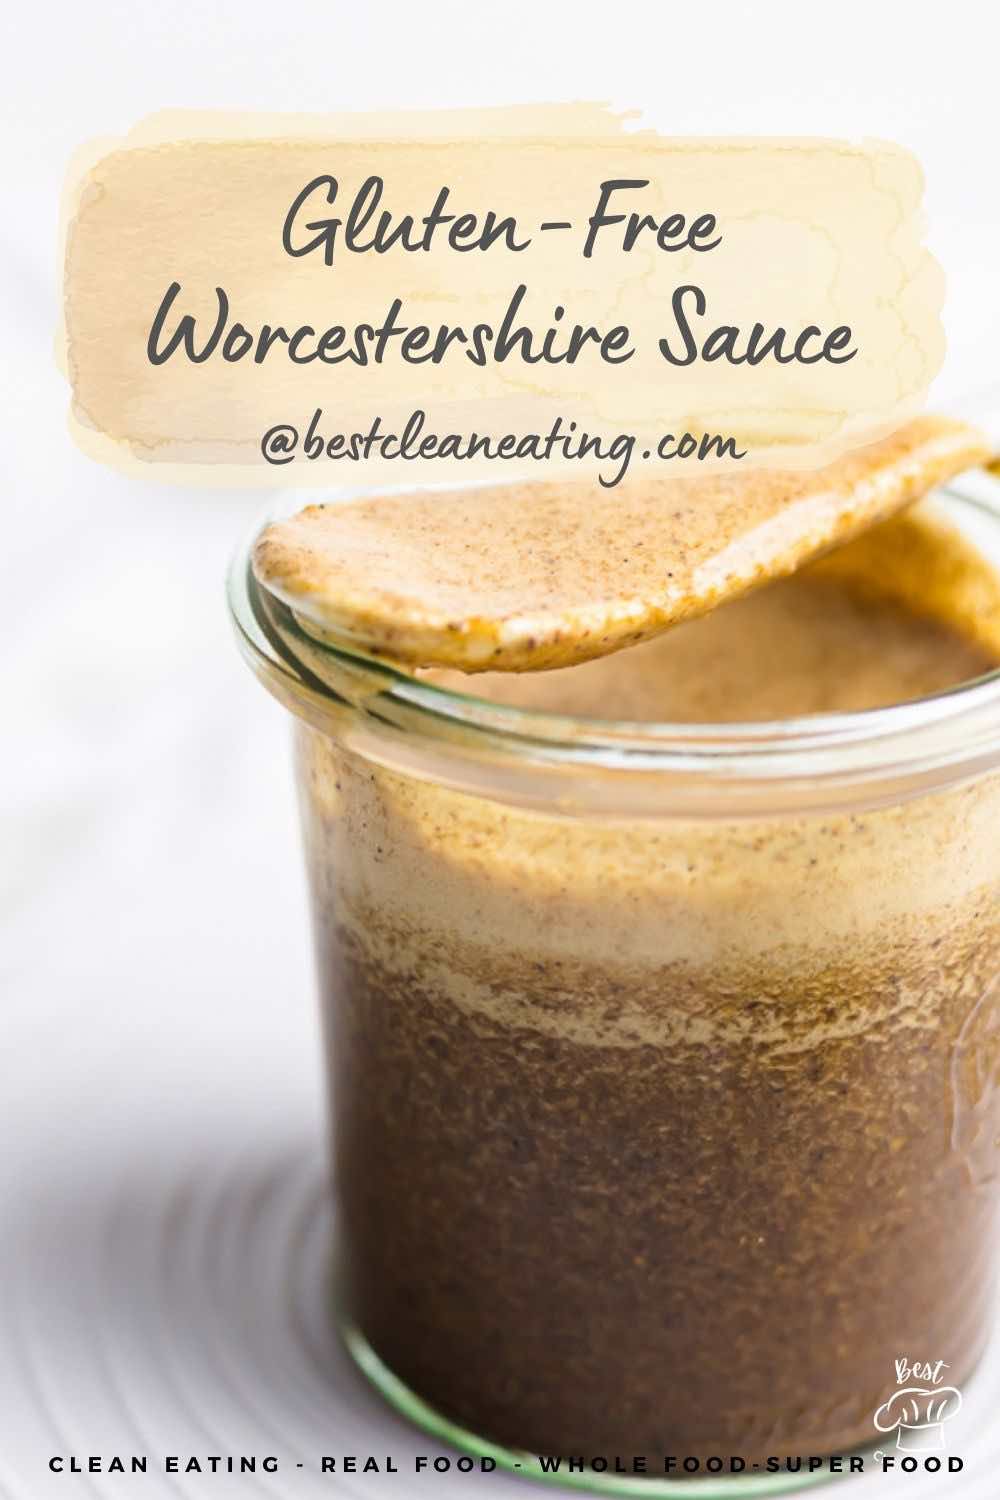 Gluten free worcestershire sauce.